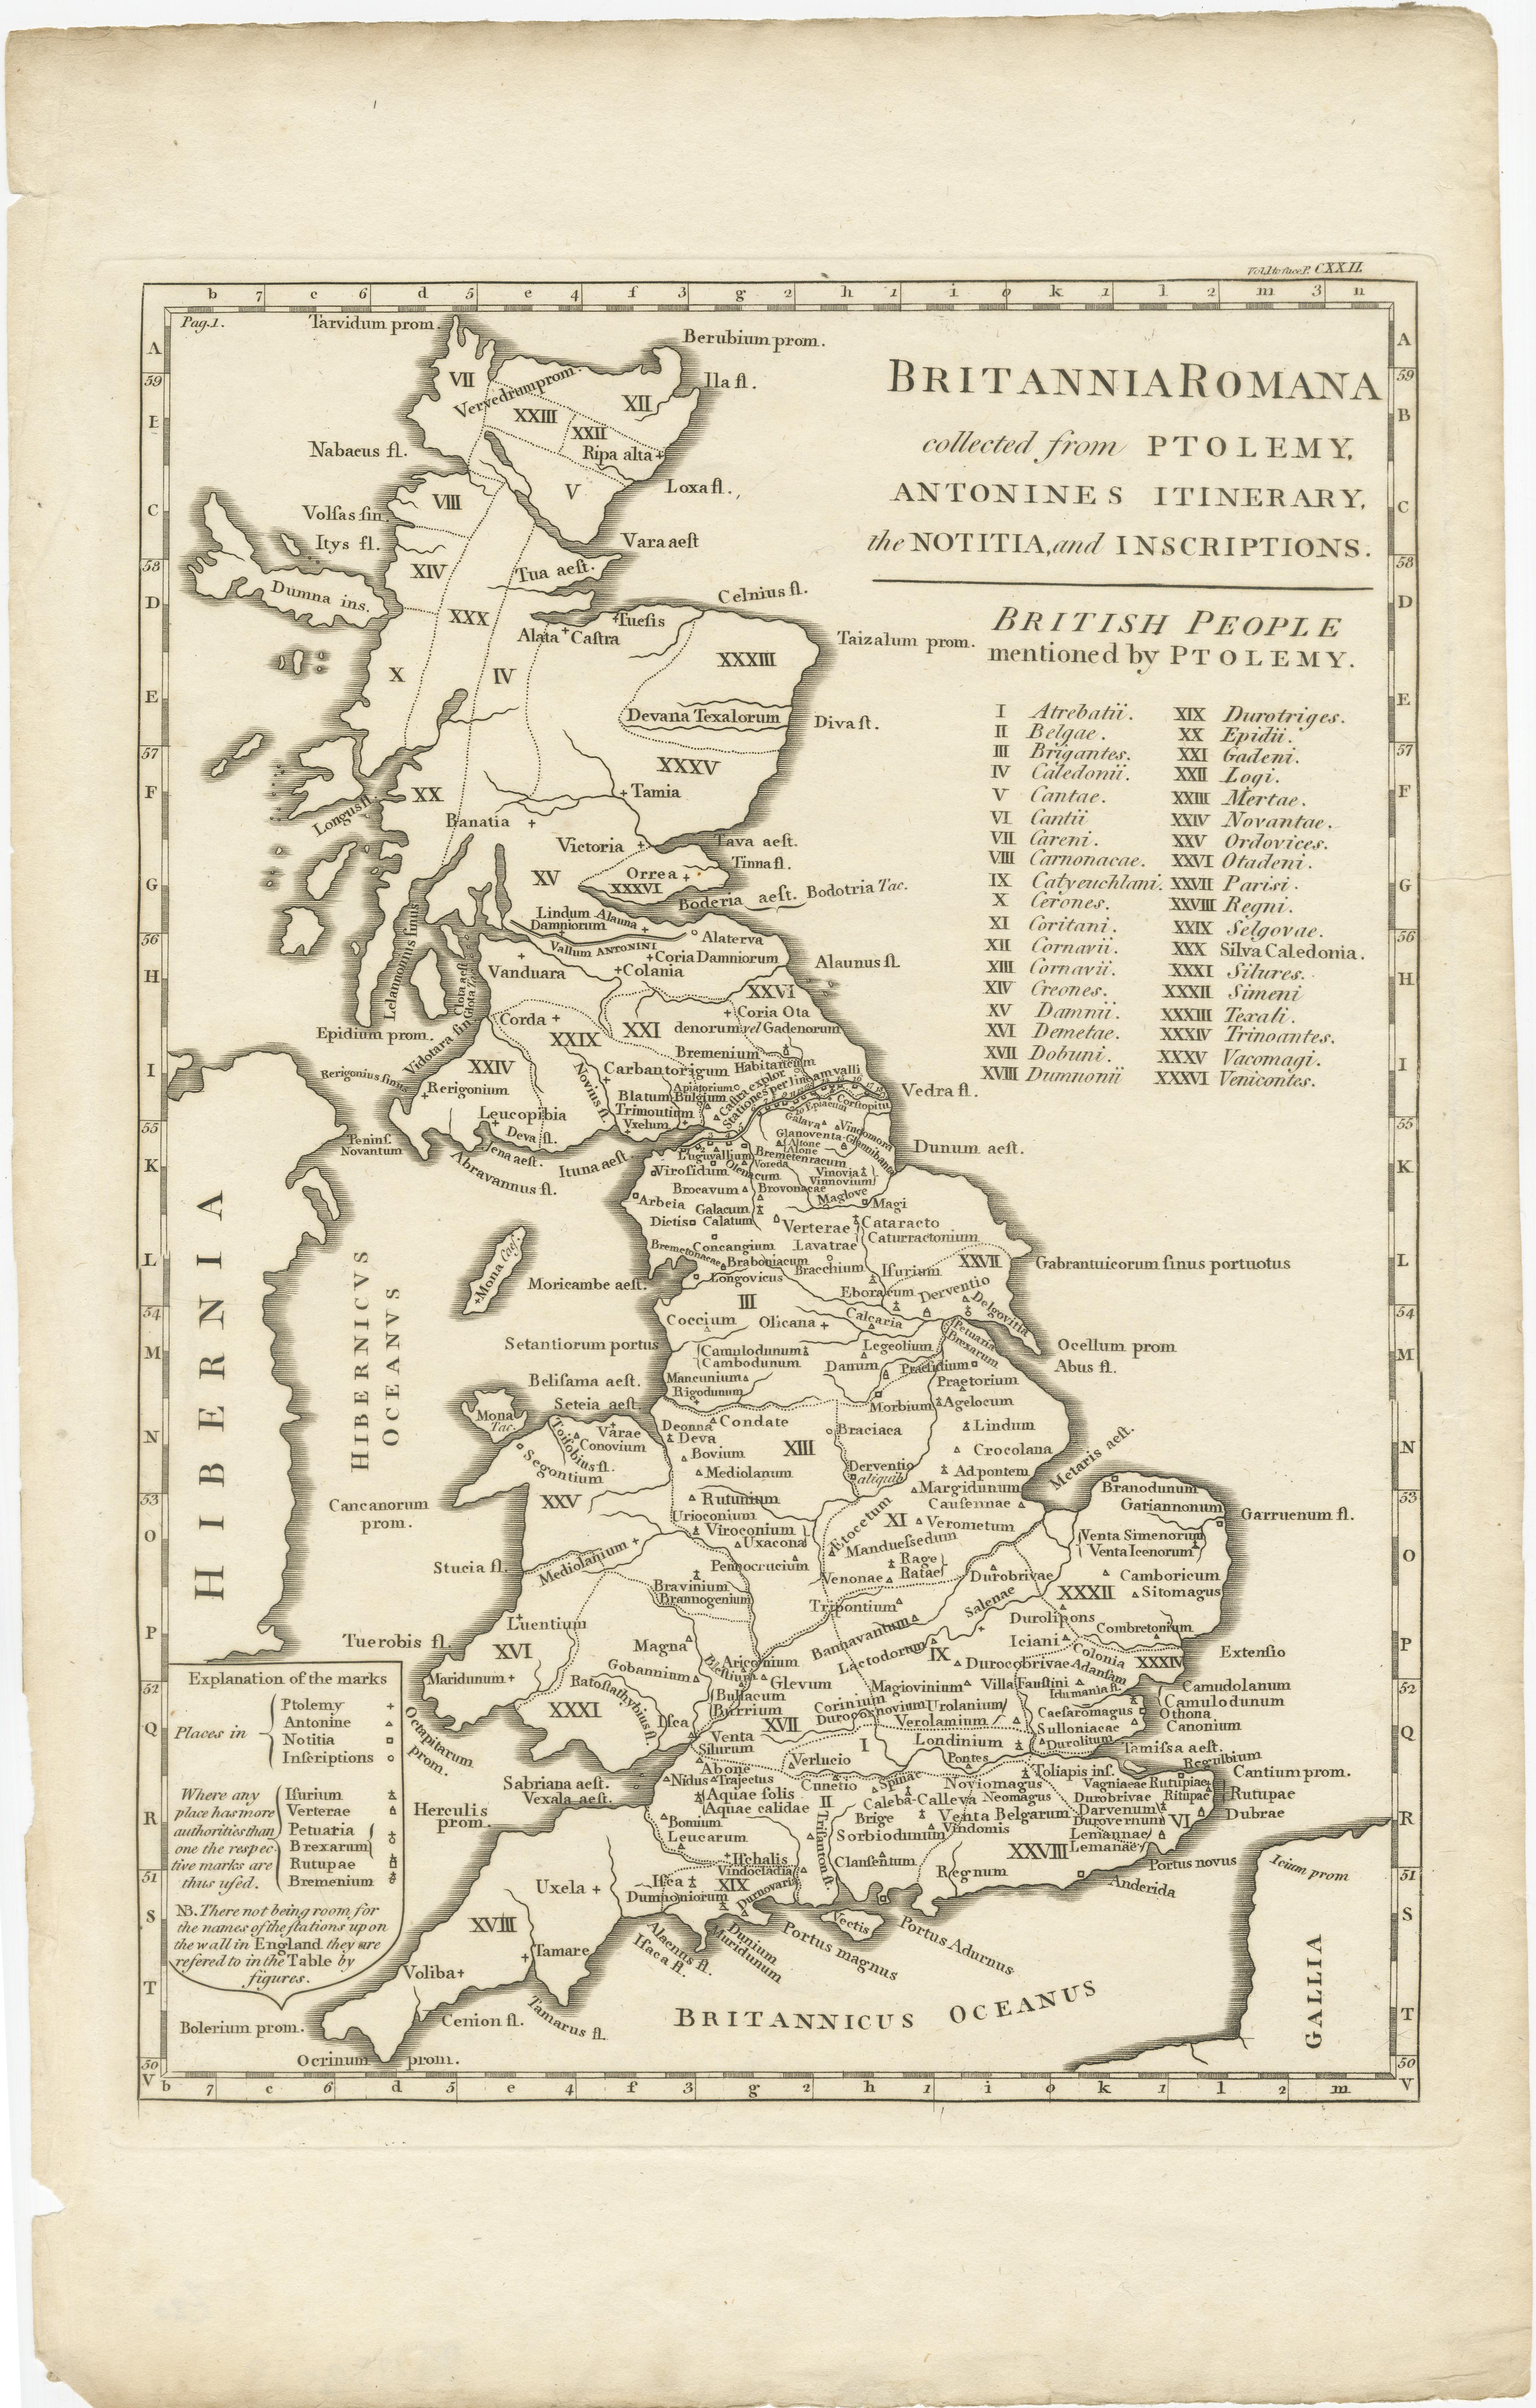 Antike Karte mit dem Titel 'Britannia Romana gesammelt von Ptolemäus (..)'. Karte von Britannien zur Zeit der Römer, die aus verschiedenen Quellen stammt, darunter die Werke von Ptolemäus und das Itinerarium des Kaisers Antoninus, ein Verzeichnis